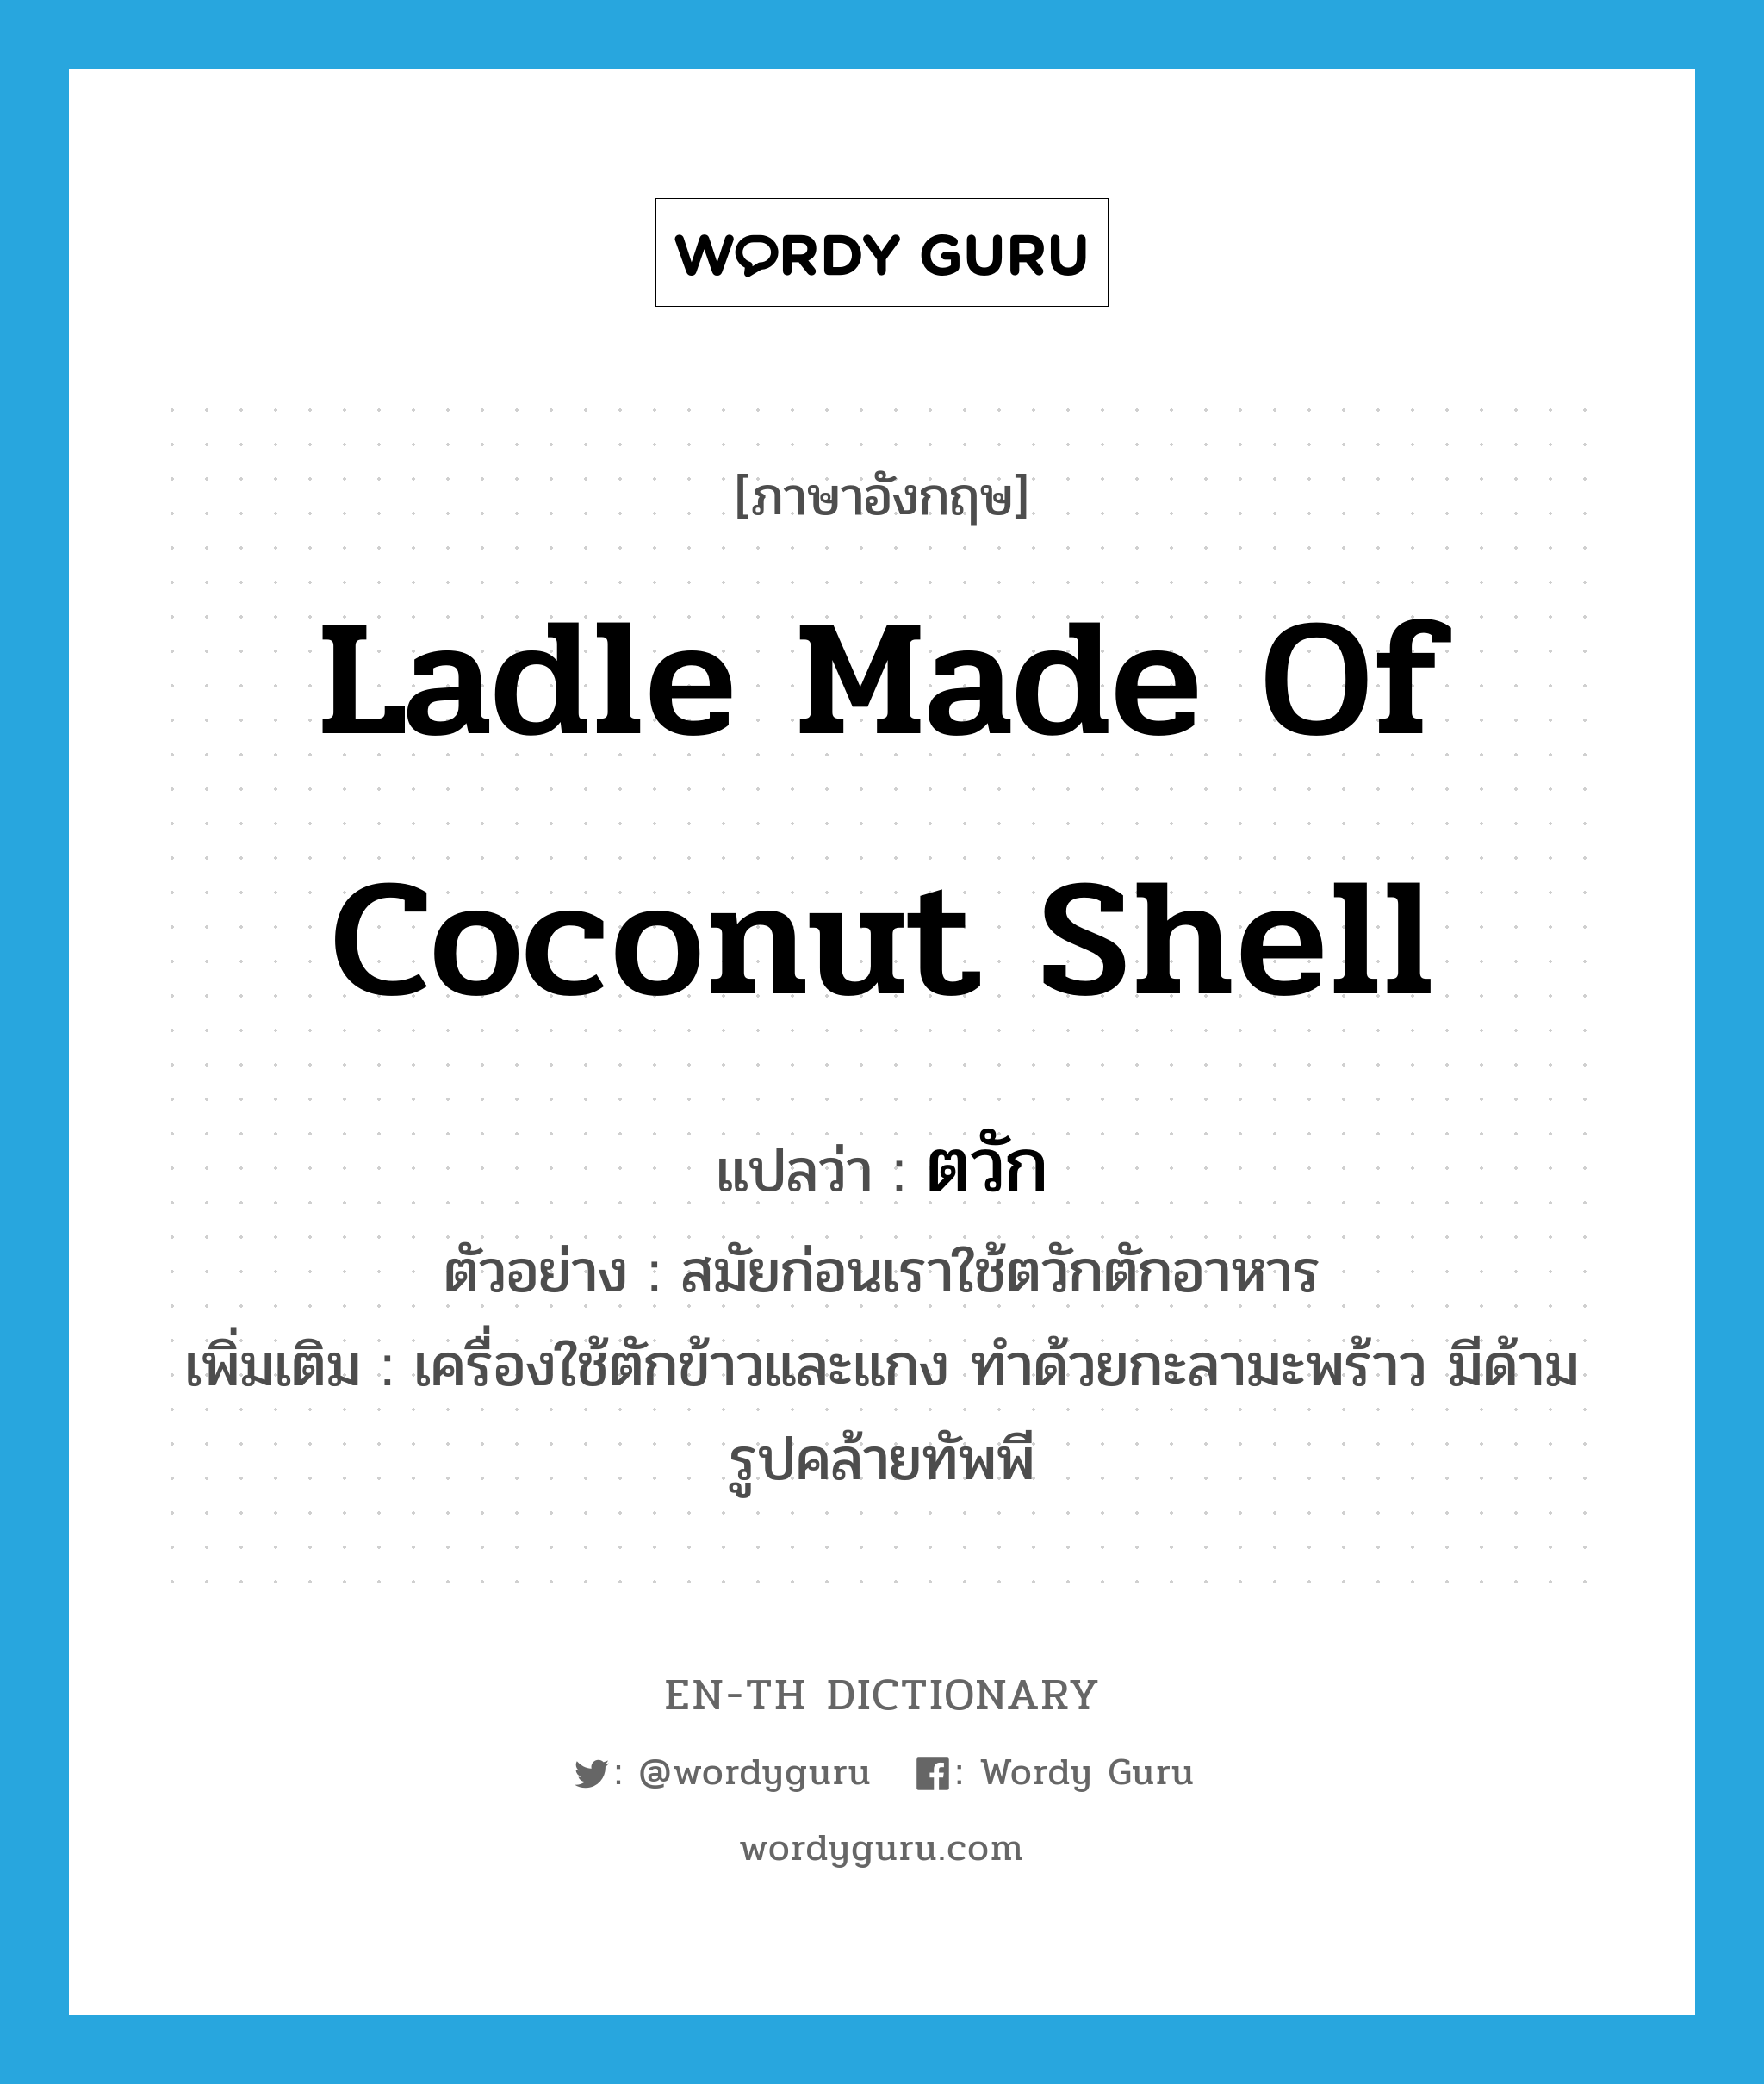 ตวัก ภาษาอังกฤษ?, คำศัพท์ภาษาอังกฤษ ตวัก แปลว่า ladle made of coconut shell ประเภท N ตัวอย่าง สมัยก่อนเราใช้ตวักตักอาหาร เพิ่มเติม เครื่องใช้ตักข้าวและแกง ทำด้วยกะลามะพร้าว มีด้าม รูปคล้ายทัพพี หมวด N